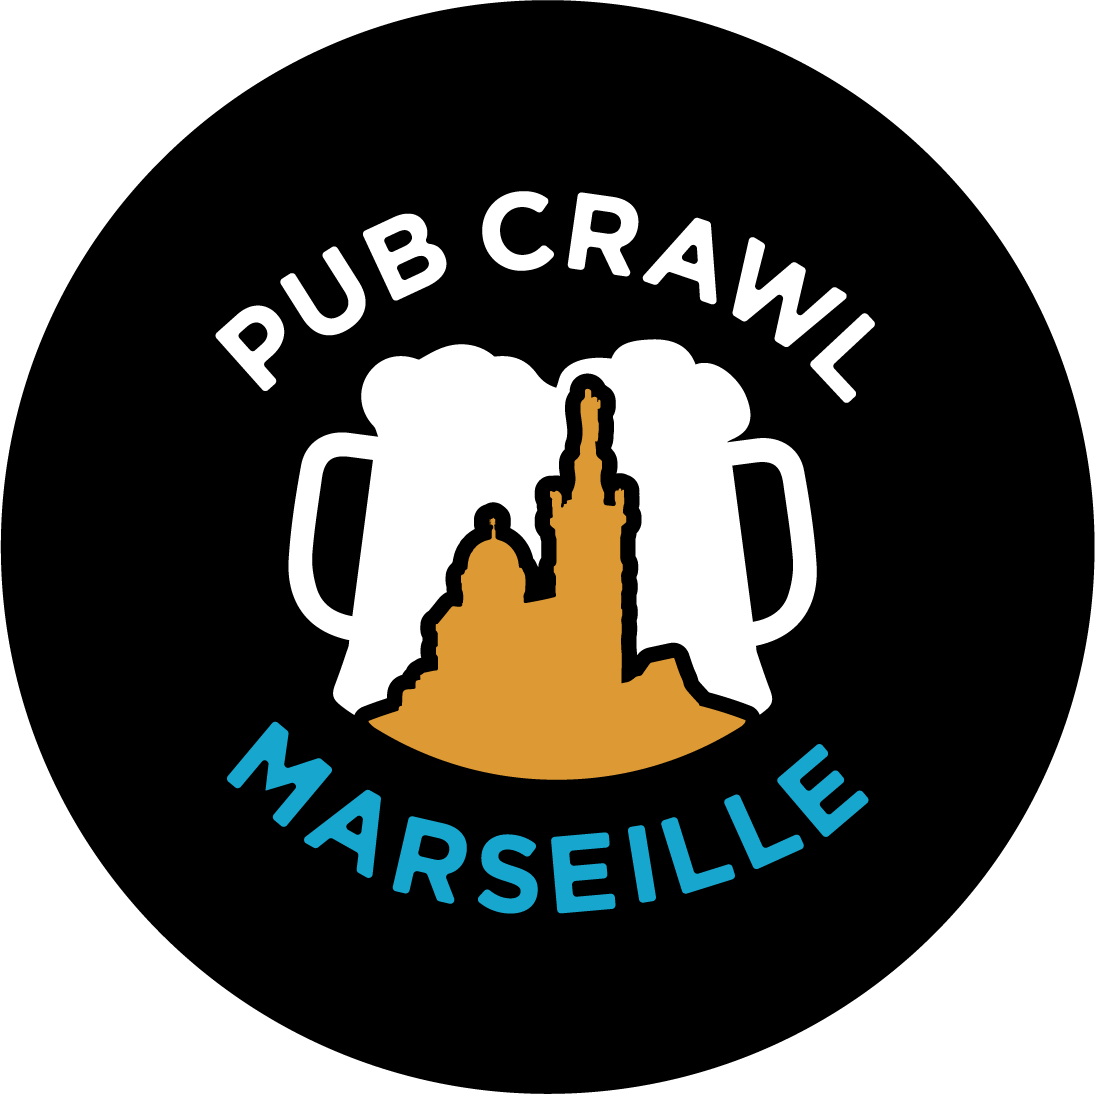 Pub Crawl Marseille